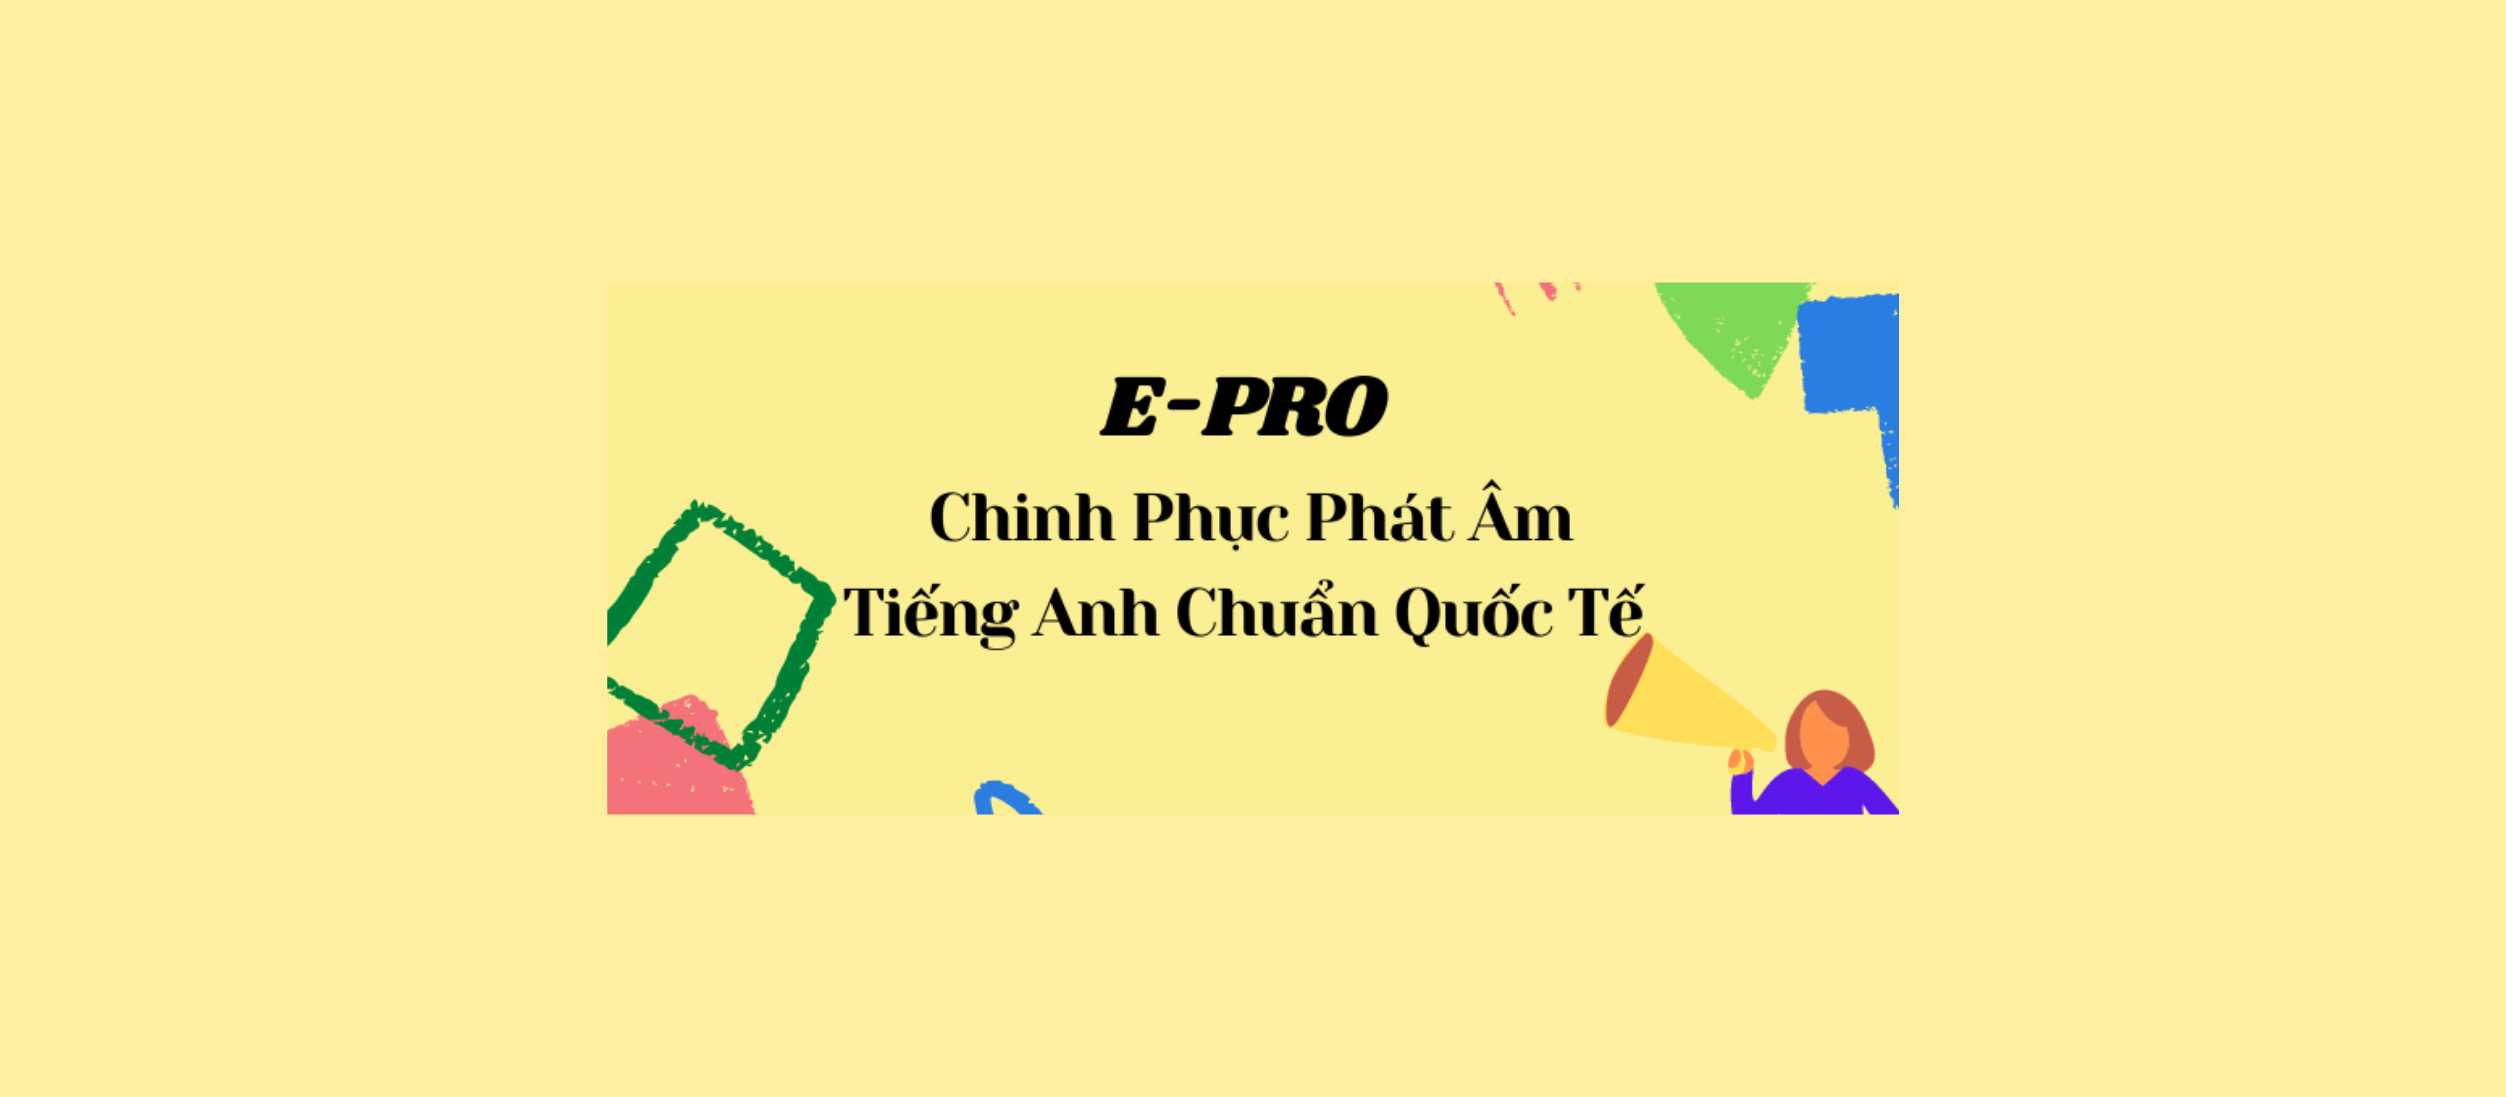 E-Pro Cùng Con Chinh Phục Phát Âm Tiếng Anh Chuẩn Quốc Tế Tại Nhà